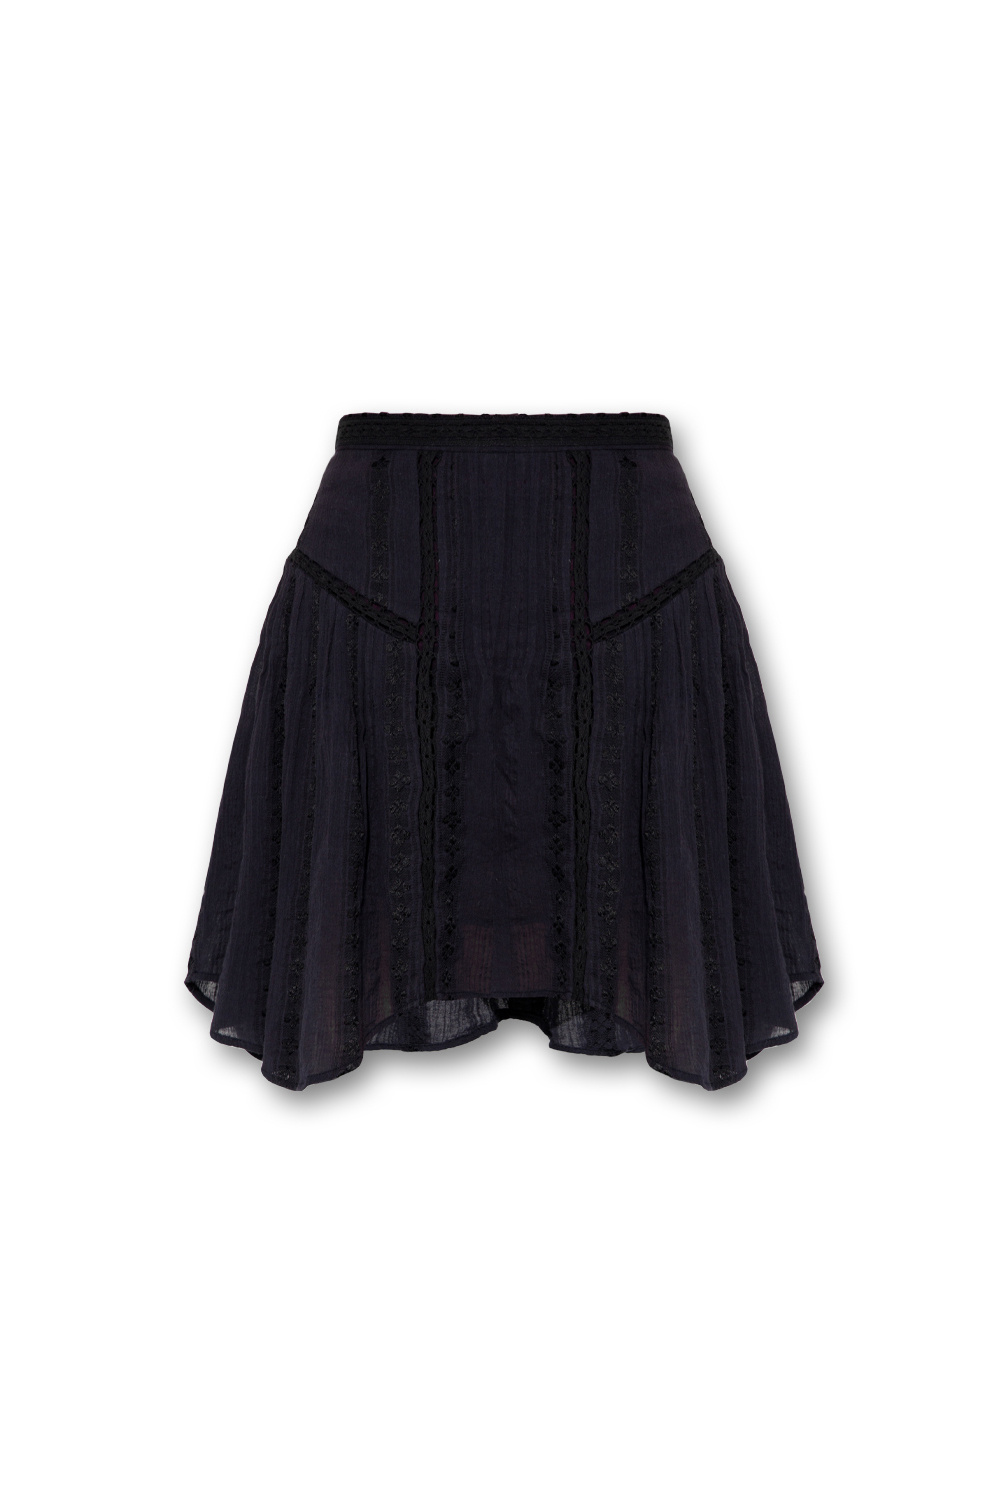 Boots / wellies ‘Jorena’ cotton skirt